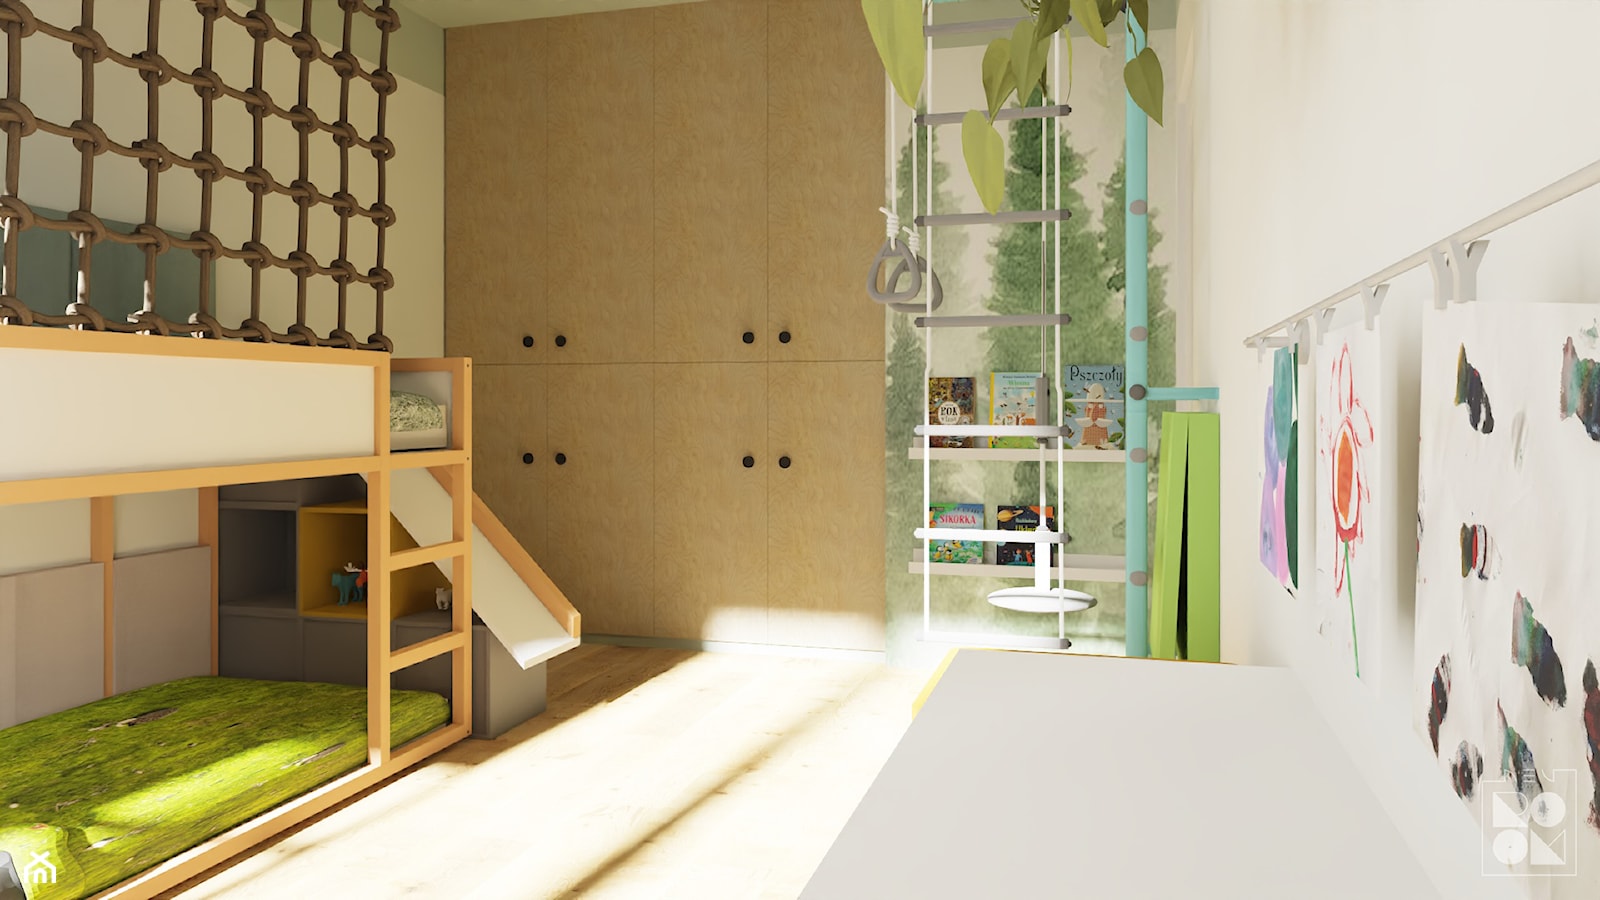 Pokój z łóżkiem piętrowym - Pokój dziecka, styl skandynawski - zdjęcie od NEUROOM - wspierające pokoje dla dzieci - Homebook